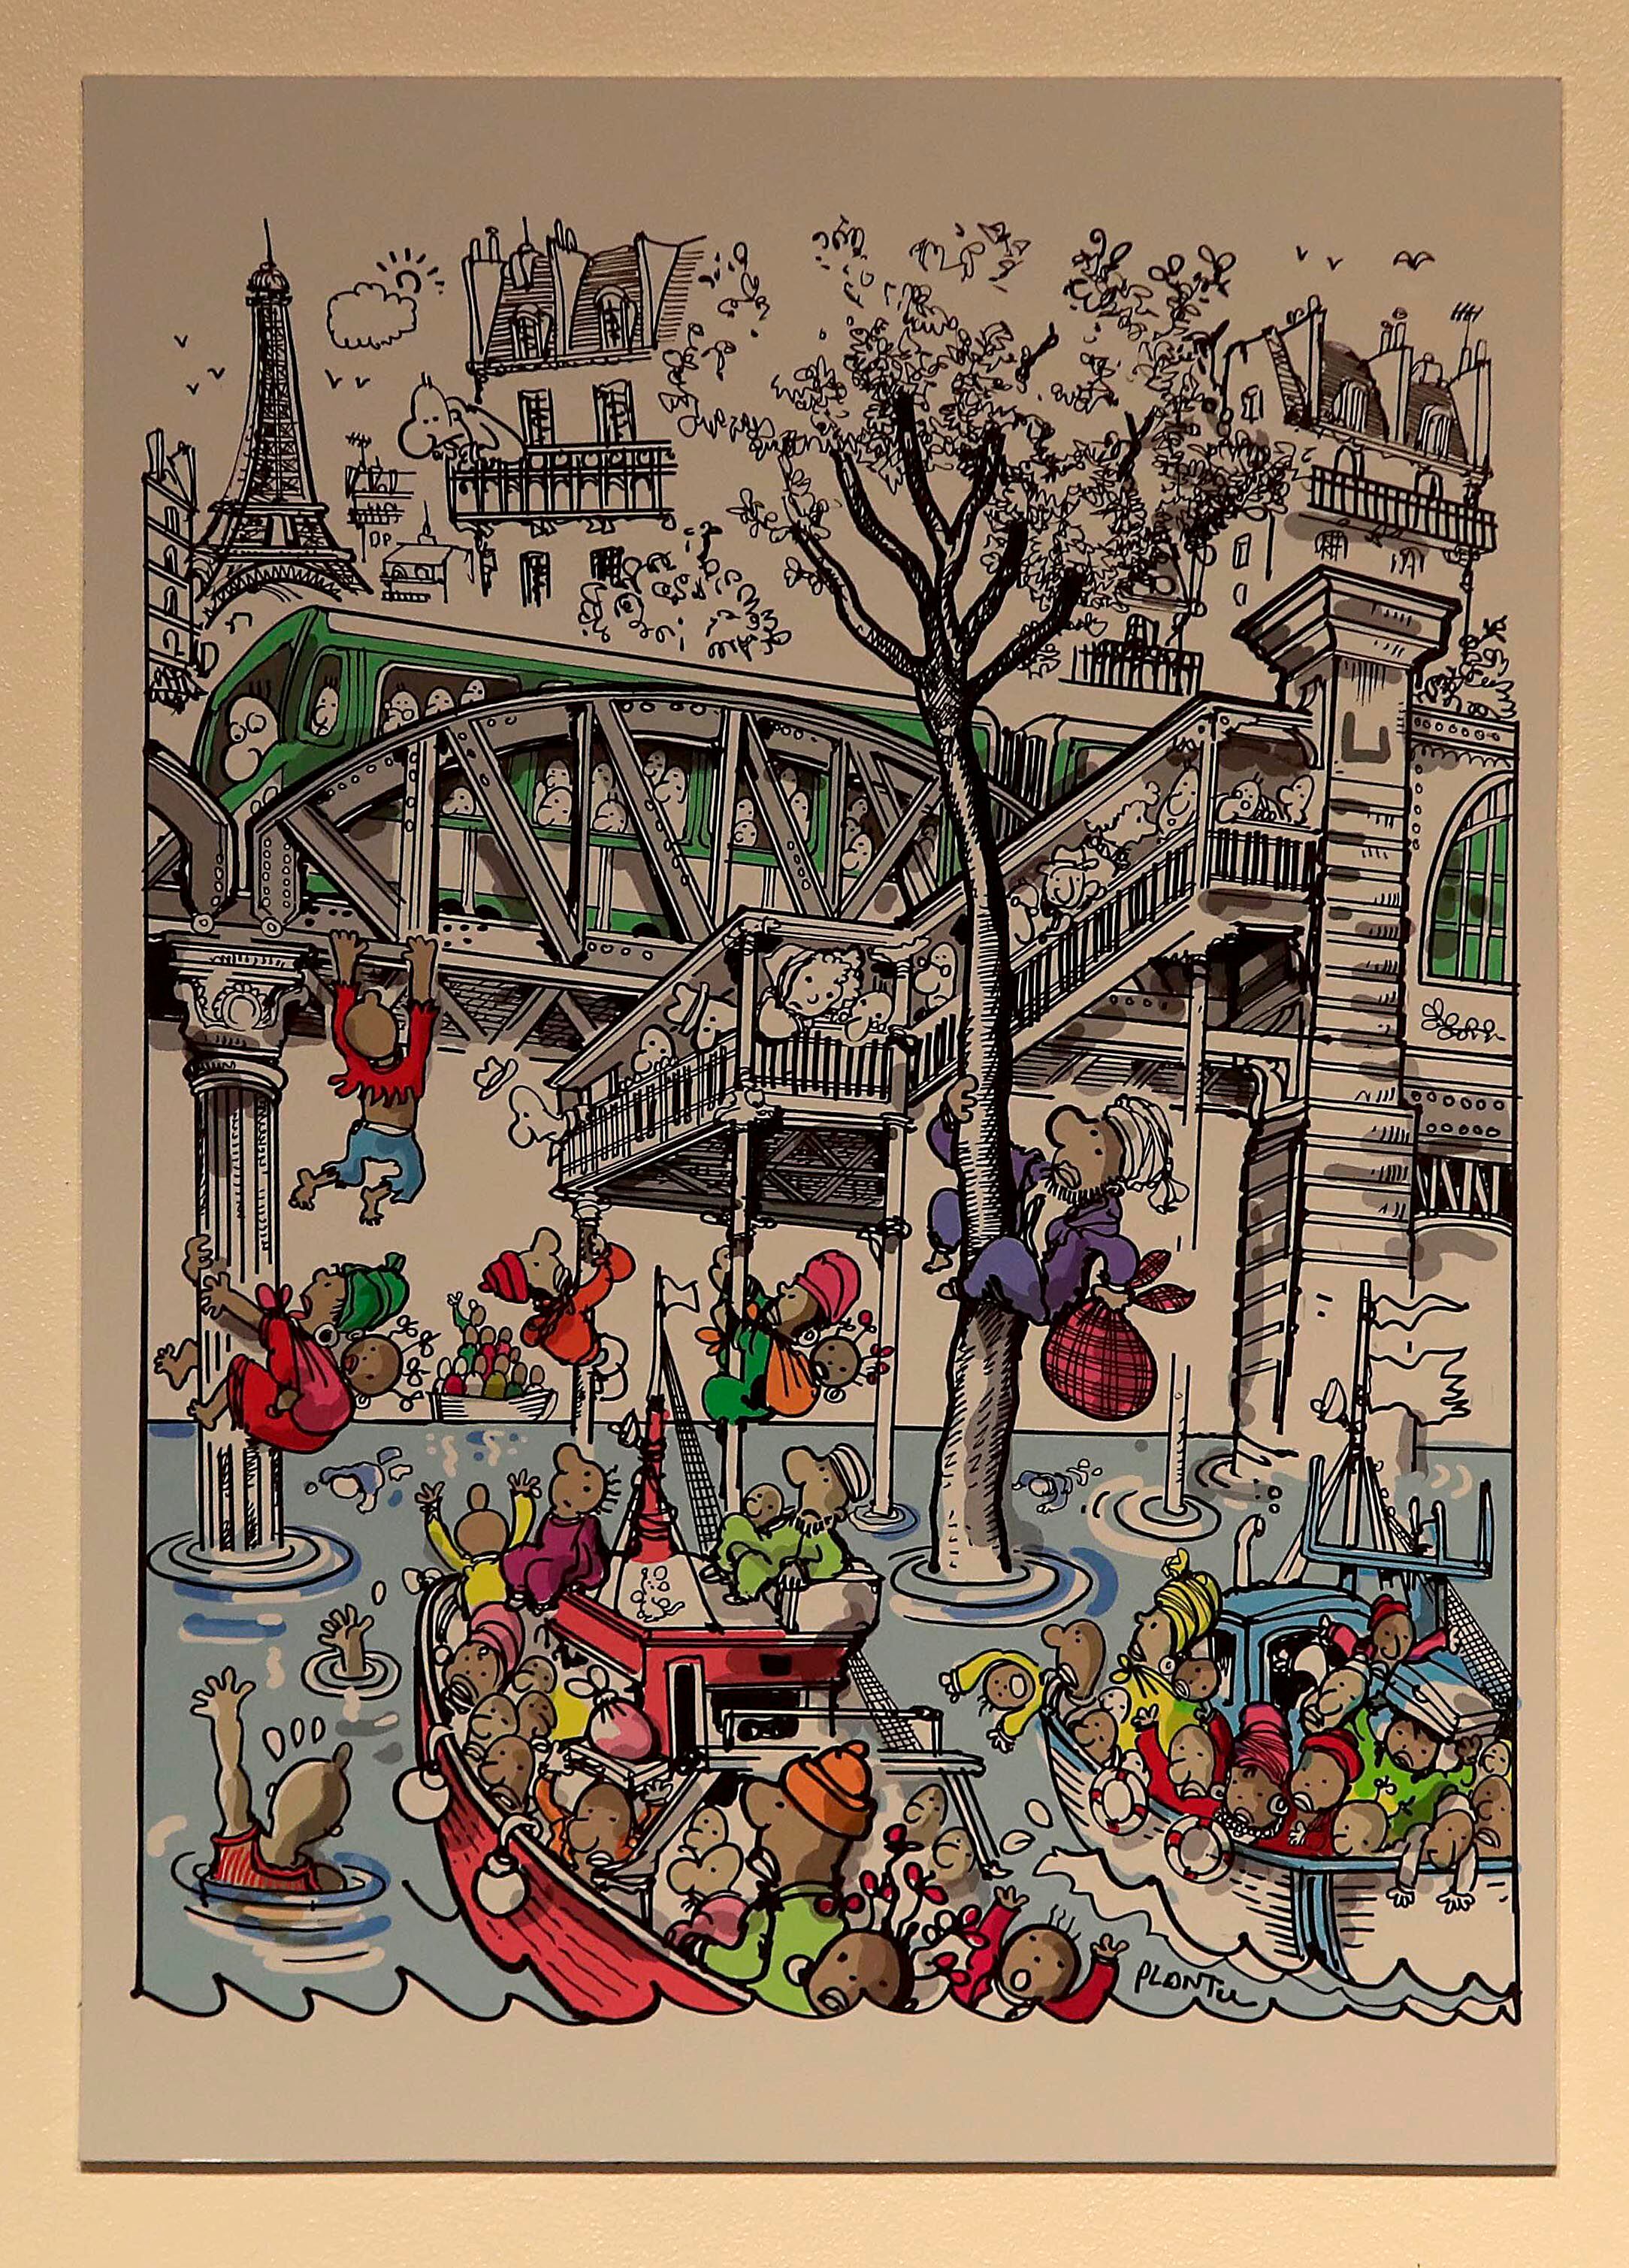 Este dibujo sobre cómo los migrantes y refugiados ven a Francia es uno de los favoritos de su autor.